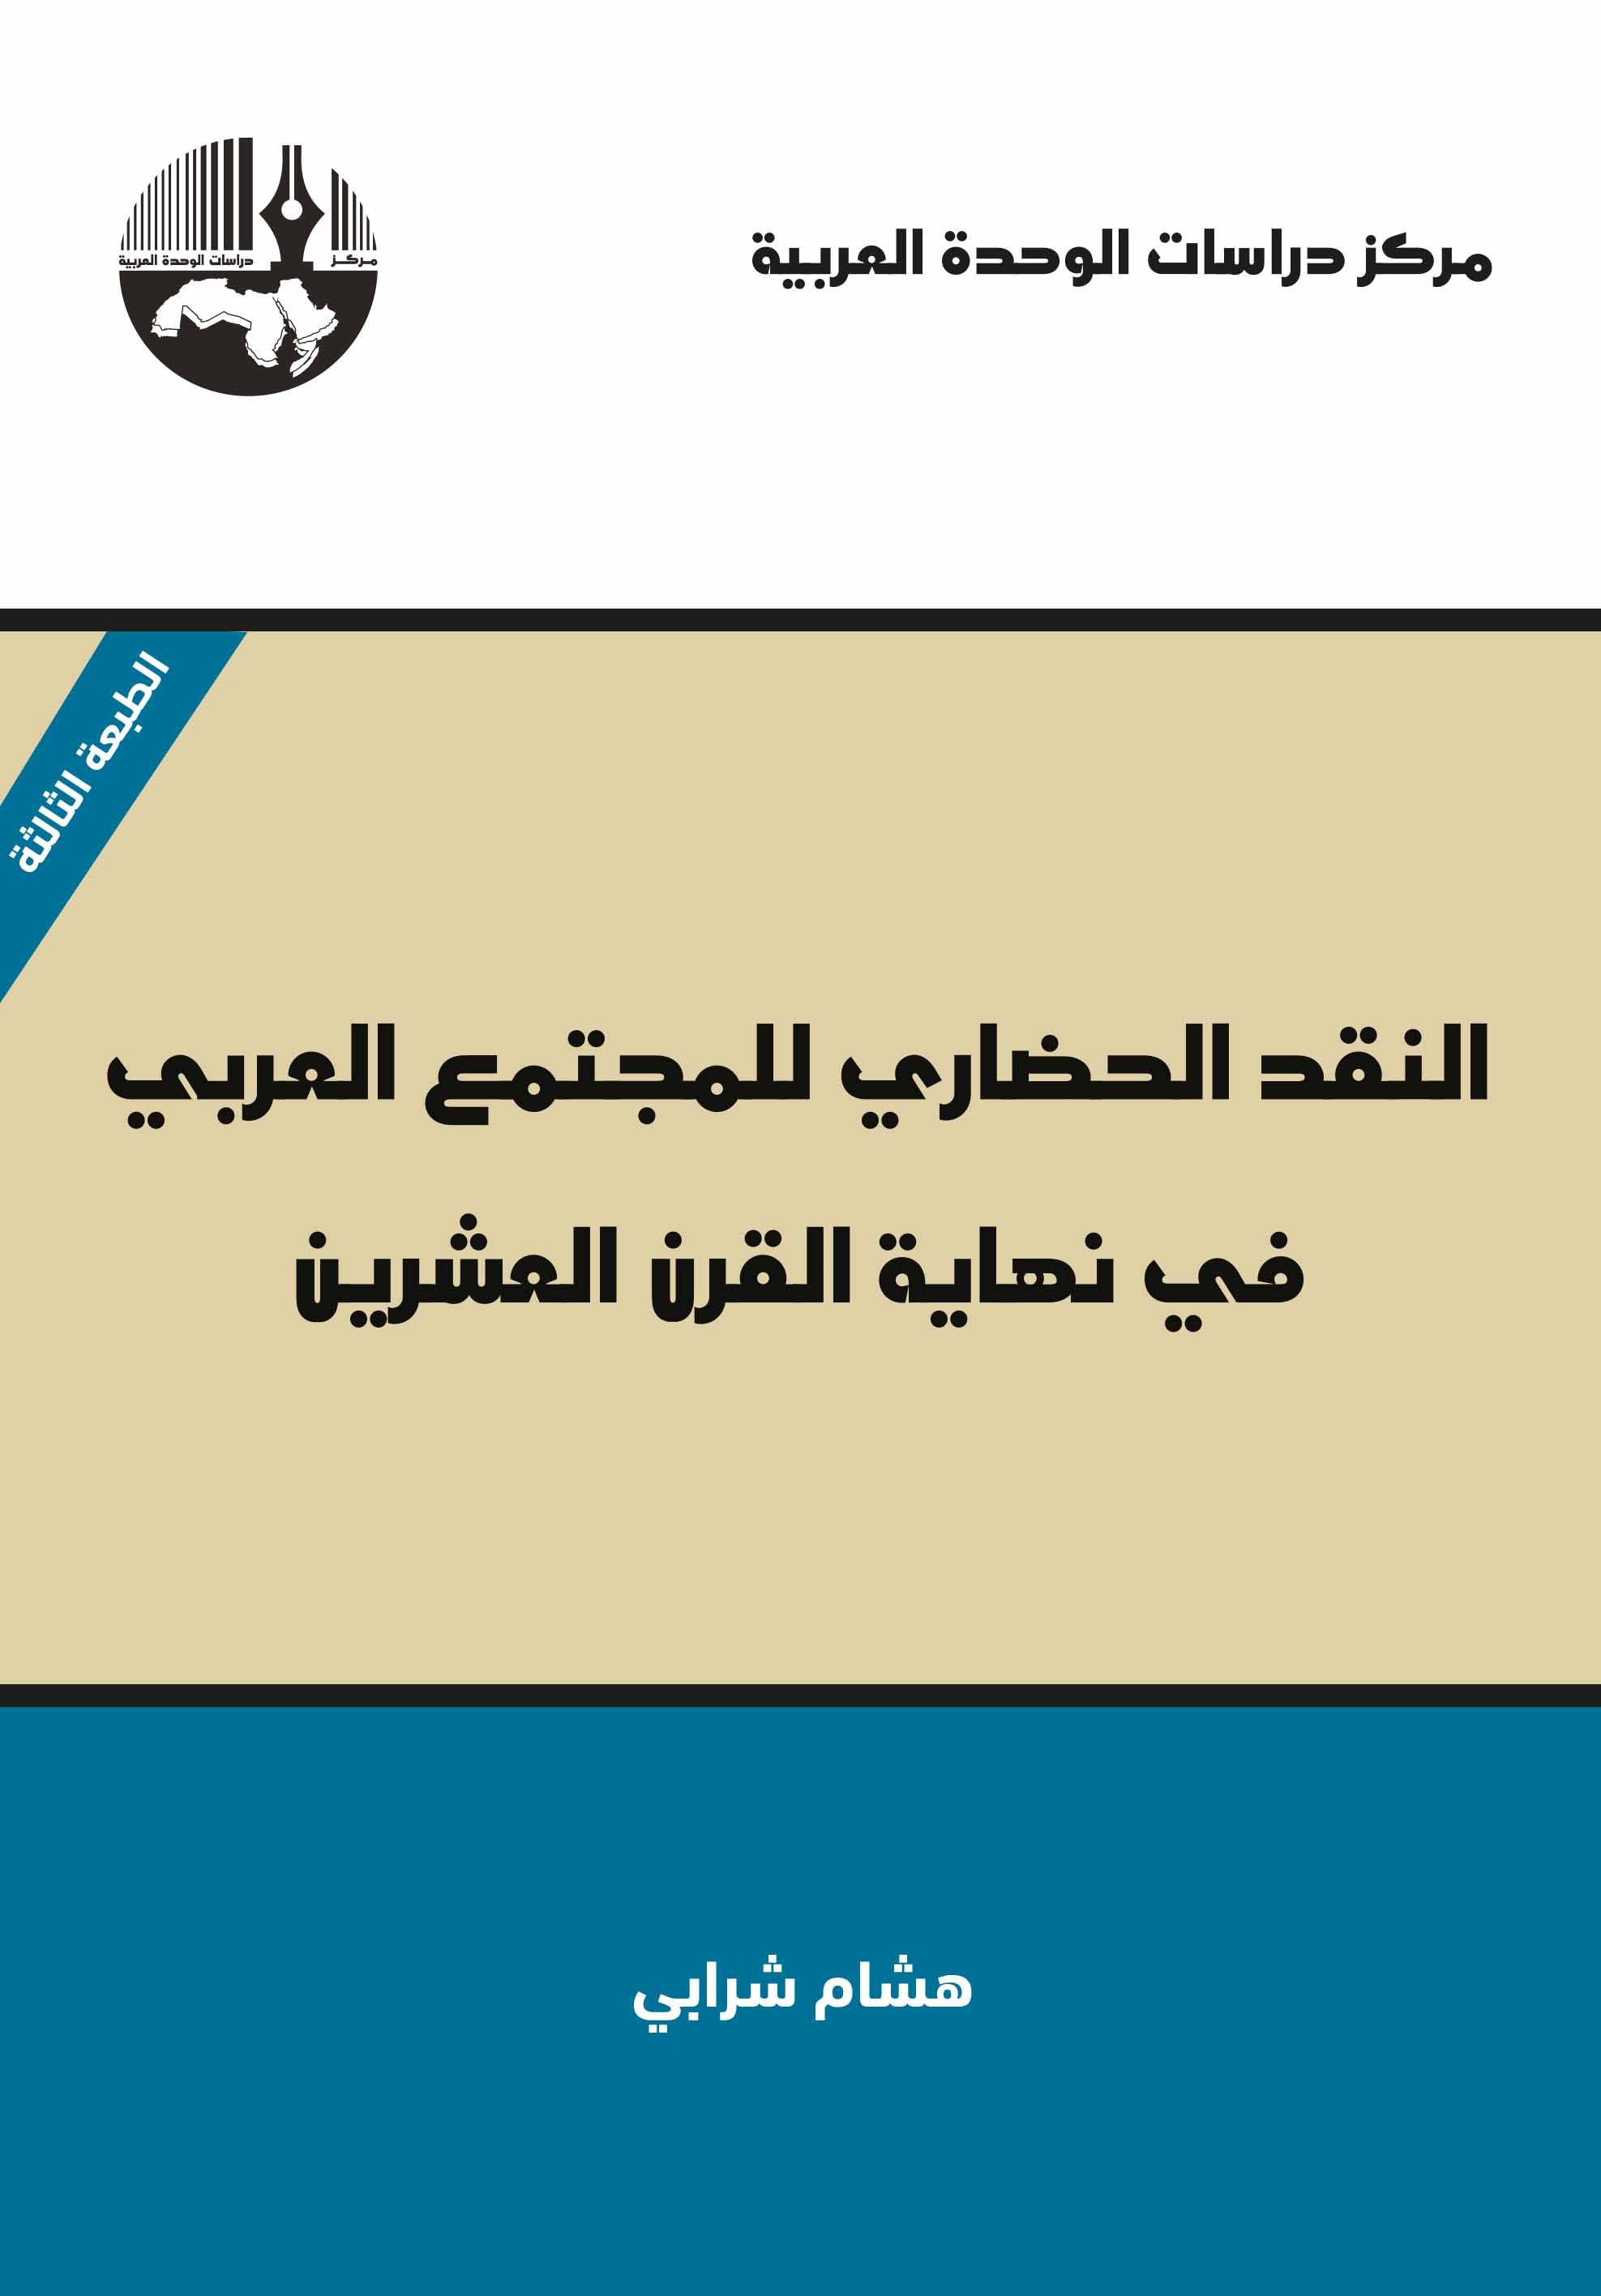 غلاف-النقد-الحضاري-للمجتمع-العربي.jpg